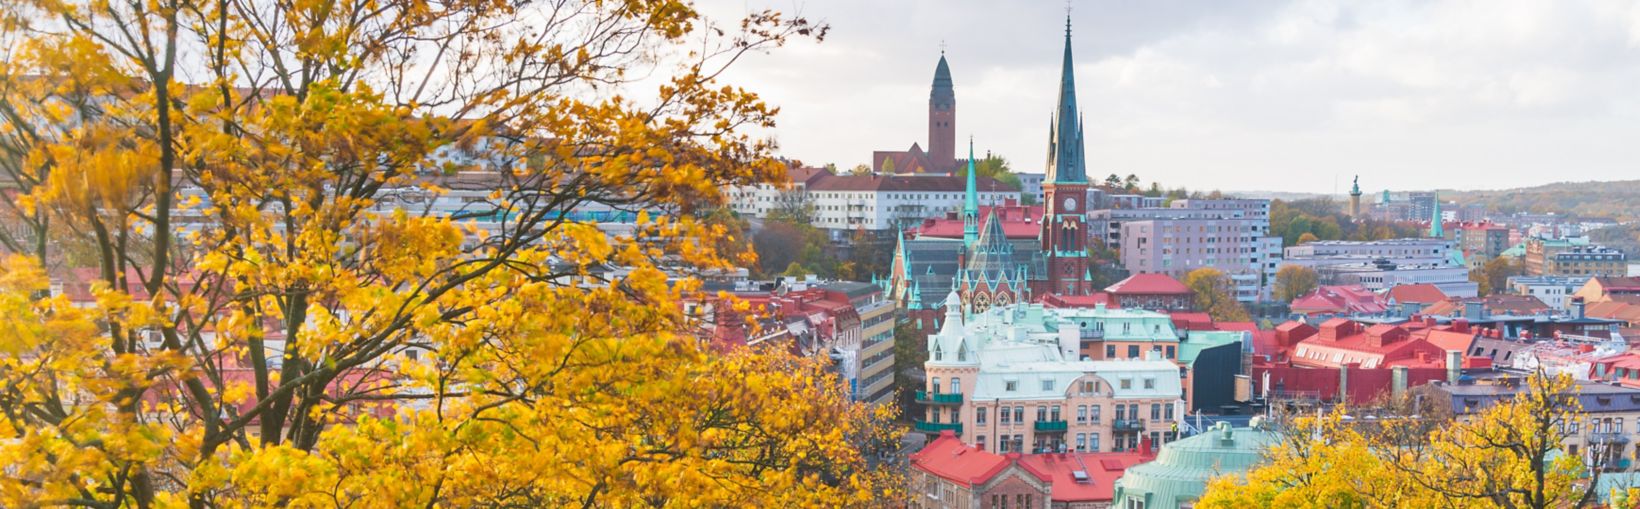 Ciudad de Gotemburgo vista detrás de una colina en un día de otoño